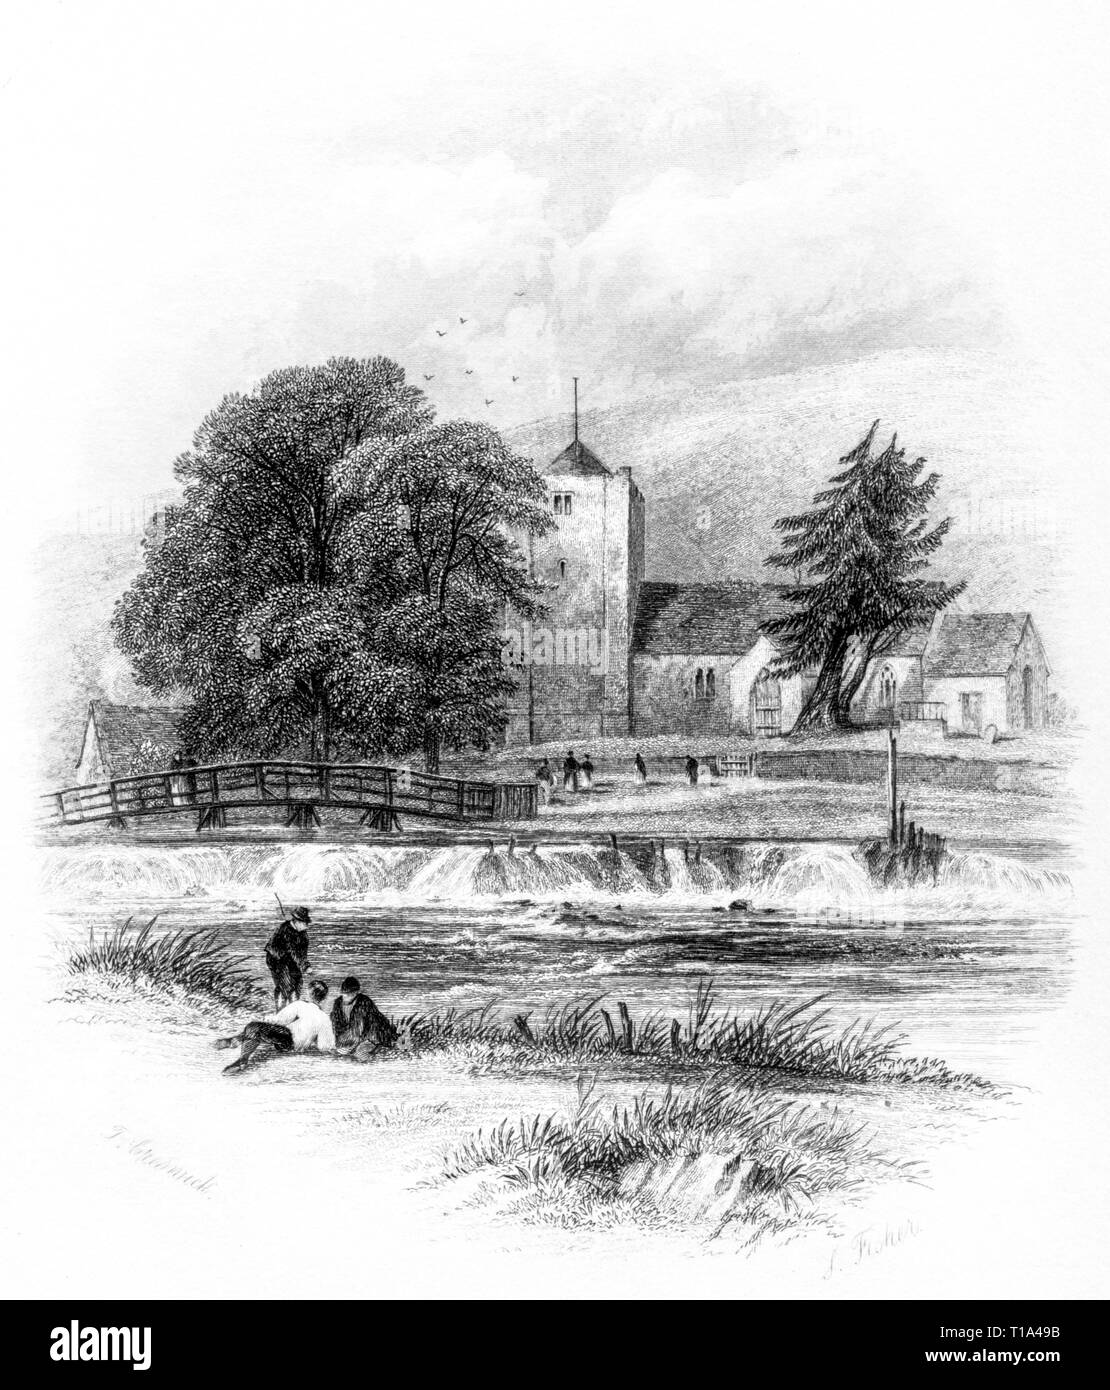 Eine Gravur der Llangerrig (Llangurig) am Ufer des Flusses Wye, Powys, Wales UK gescannt und in hoher Auflösung aus einem Buch 1841 veröffentlicht. Stockfoto